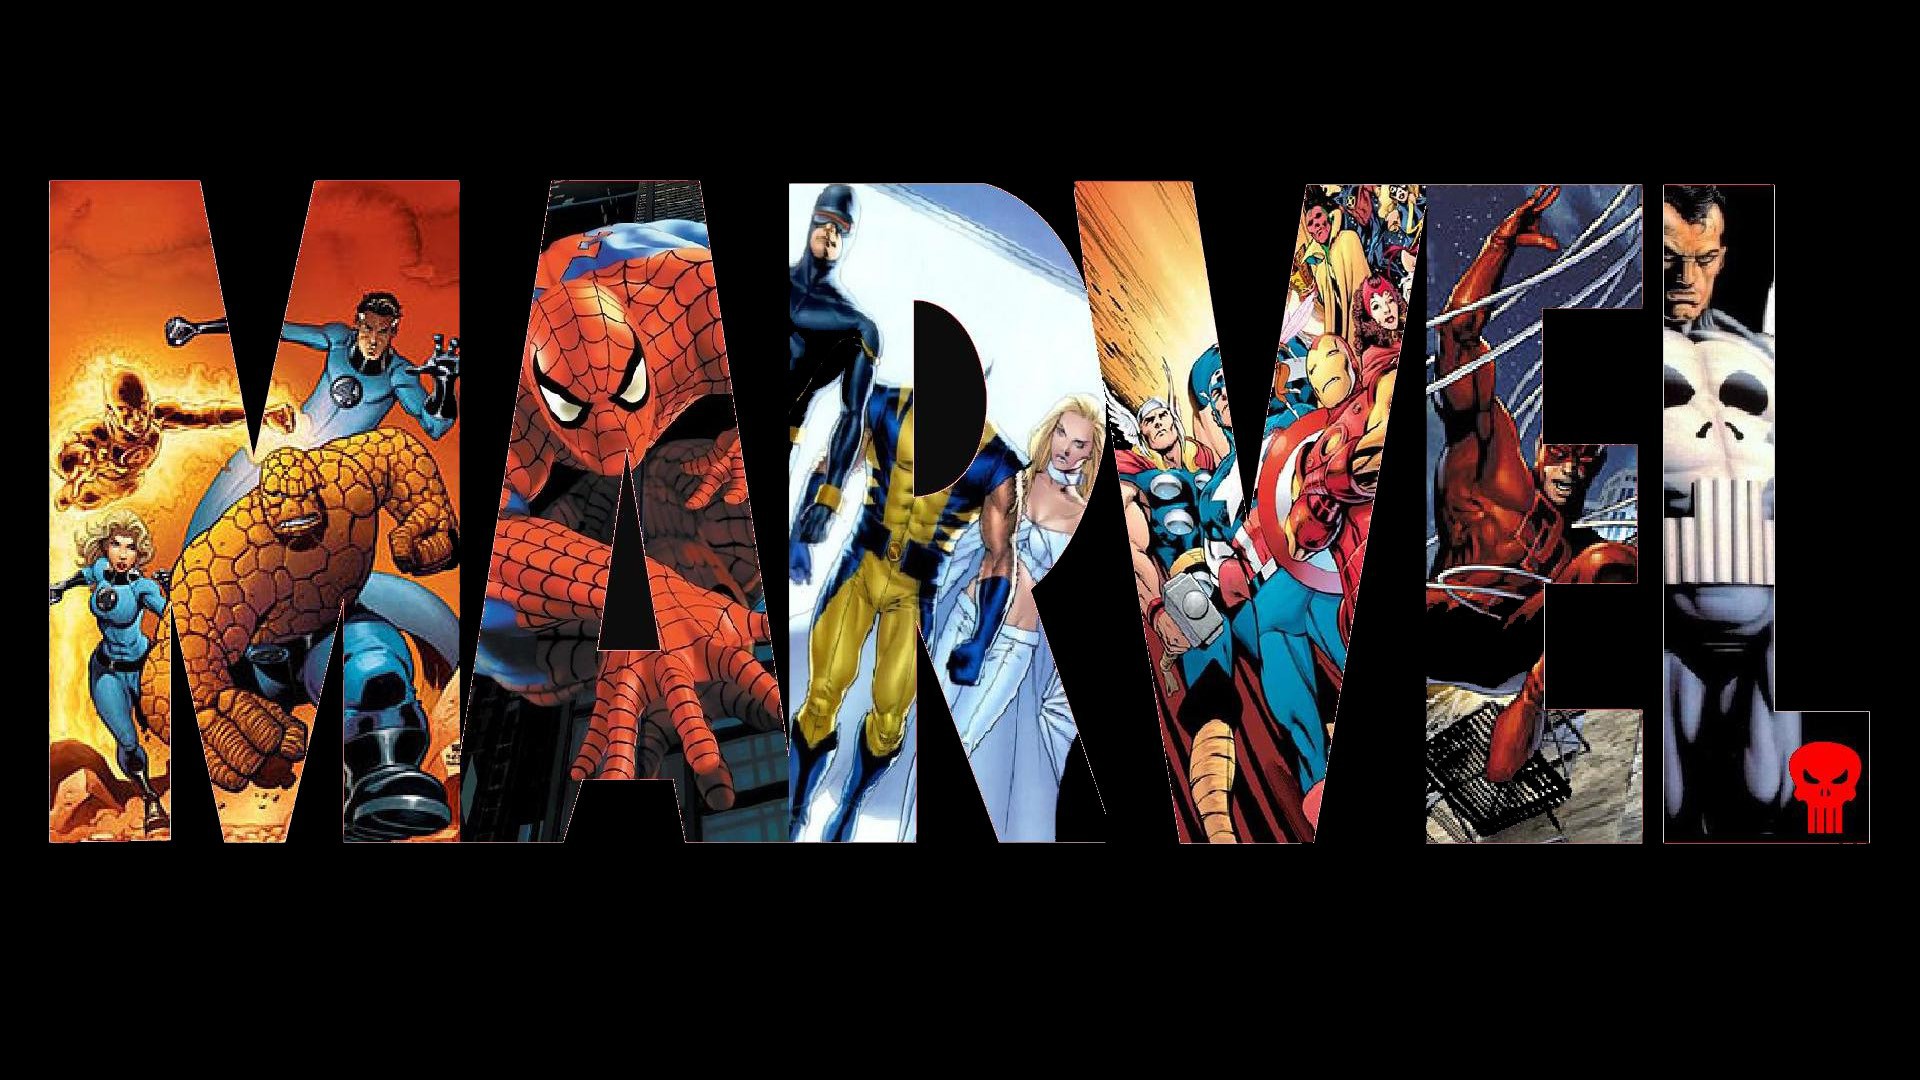 Vũ trụ Điện ảnh Marvel trở thành thương hiệu phim đầu tiên cán mốc 5 tỷ USD tại Bắc Mỹ